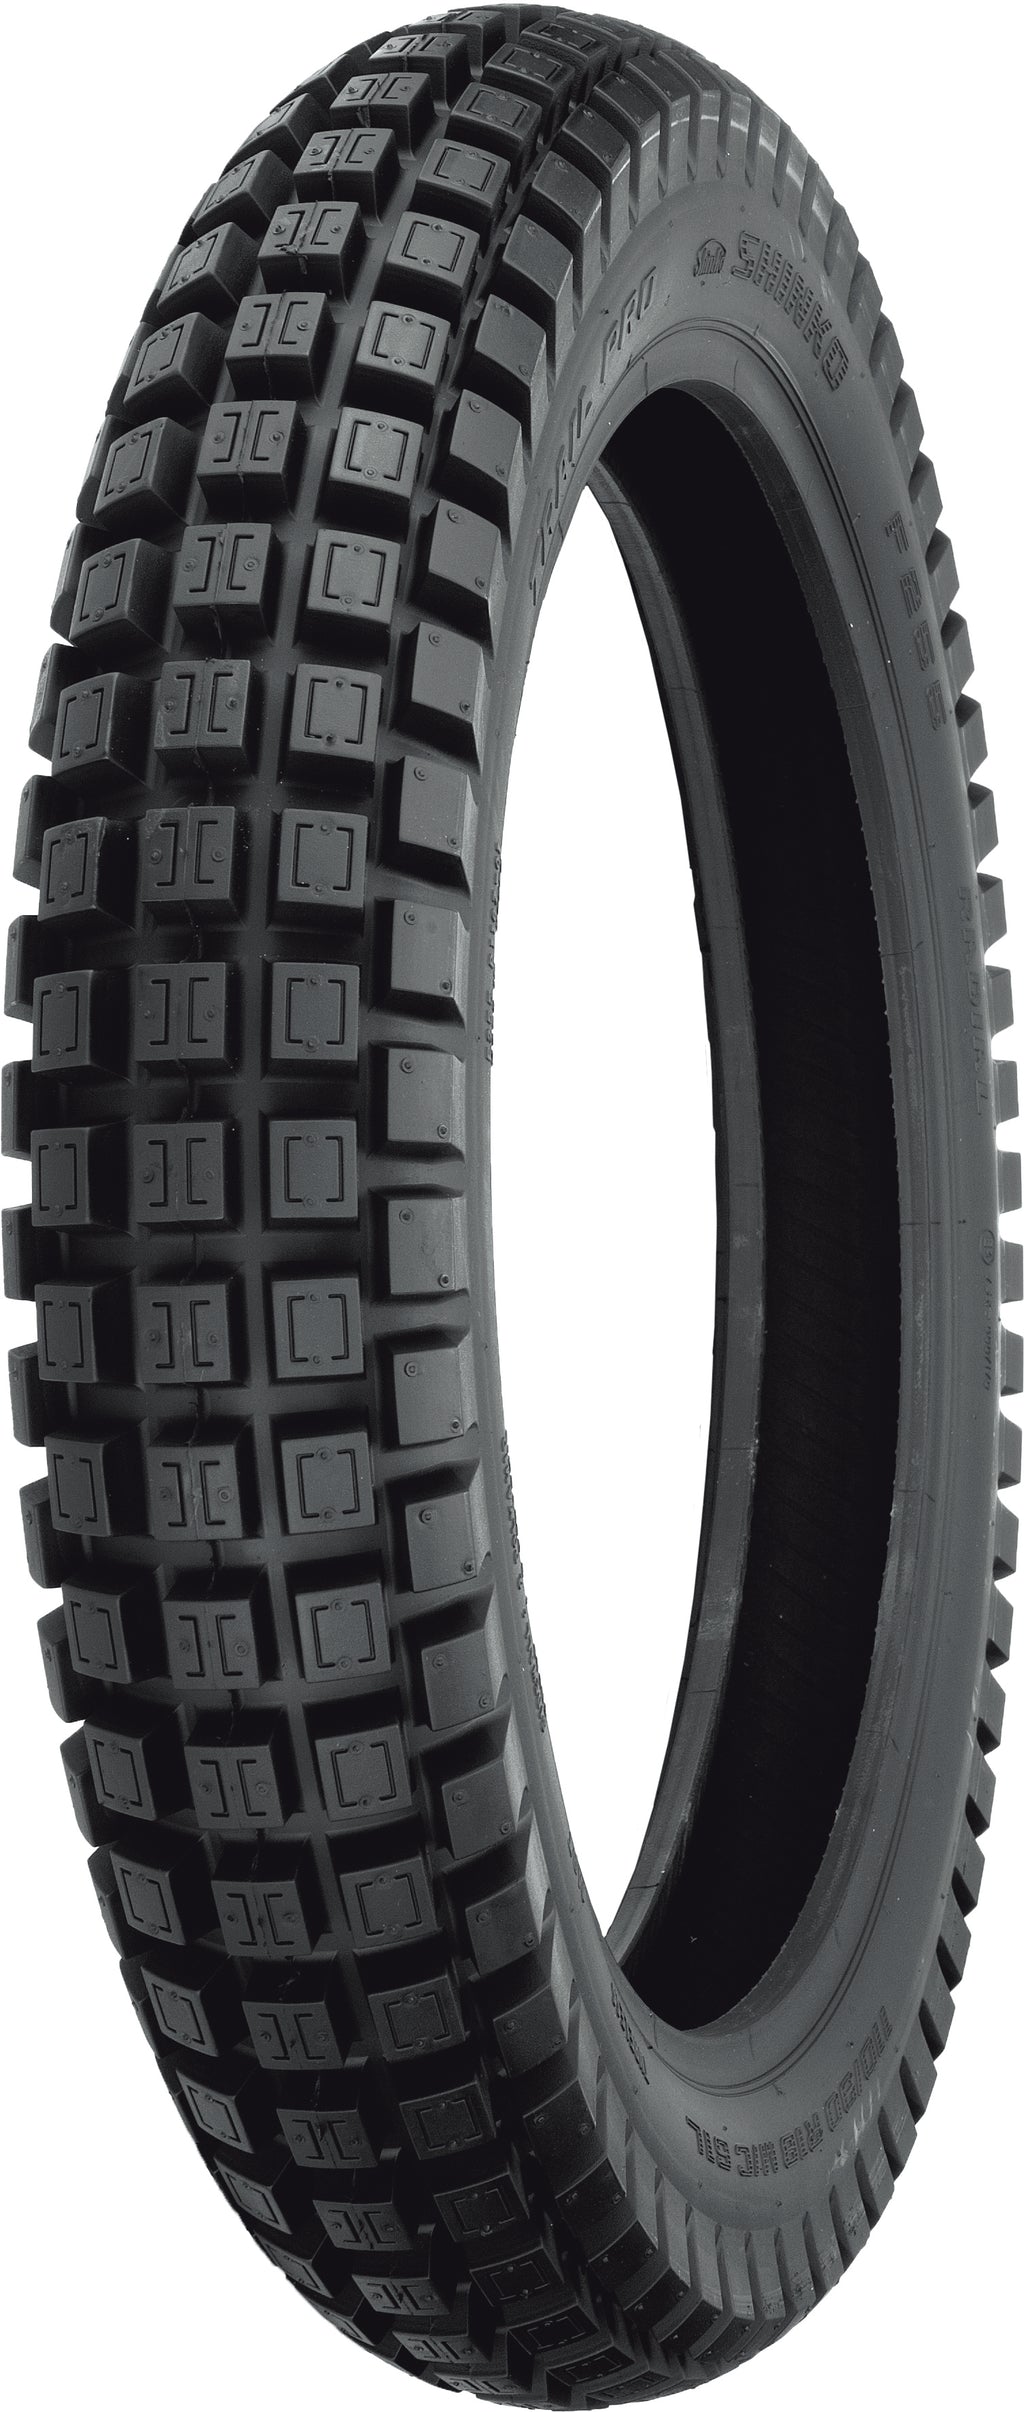 Tire 255 Trail Pro Rear 110/90r18 61l Radial Tl